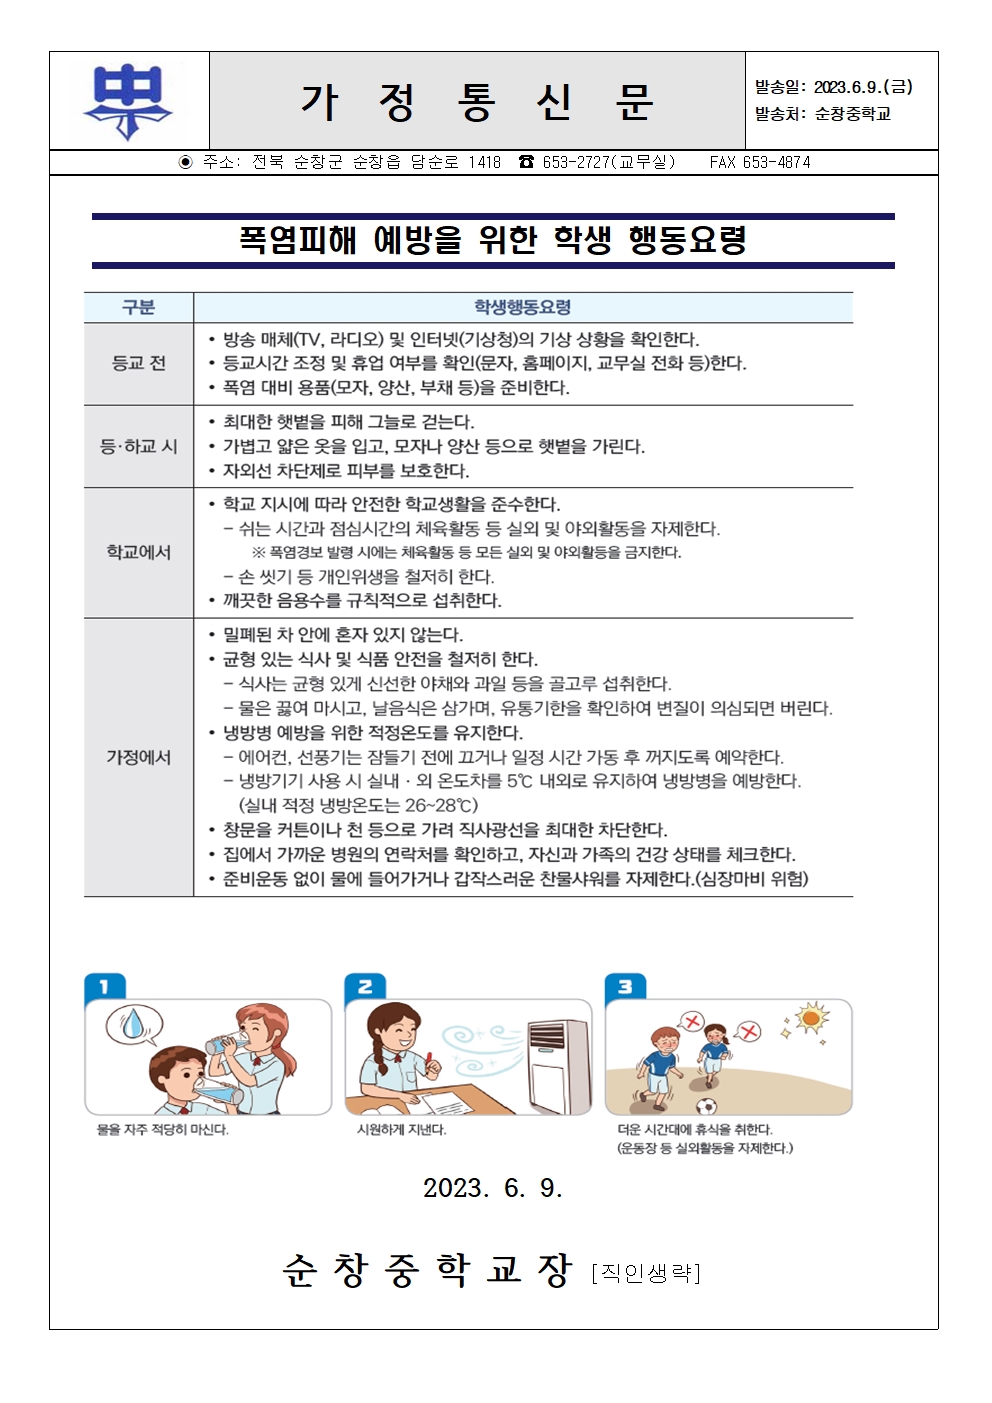 폭염피해 예방을 위한 학생 행동요령 가정통신문001